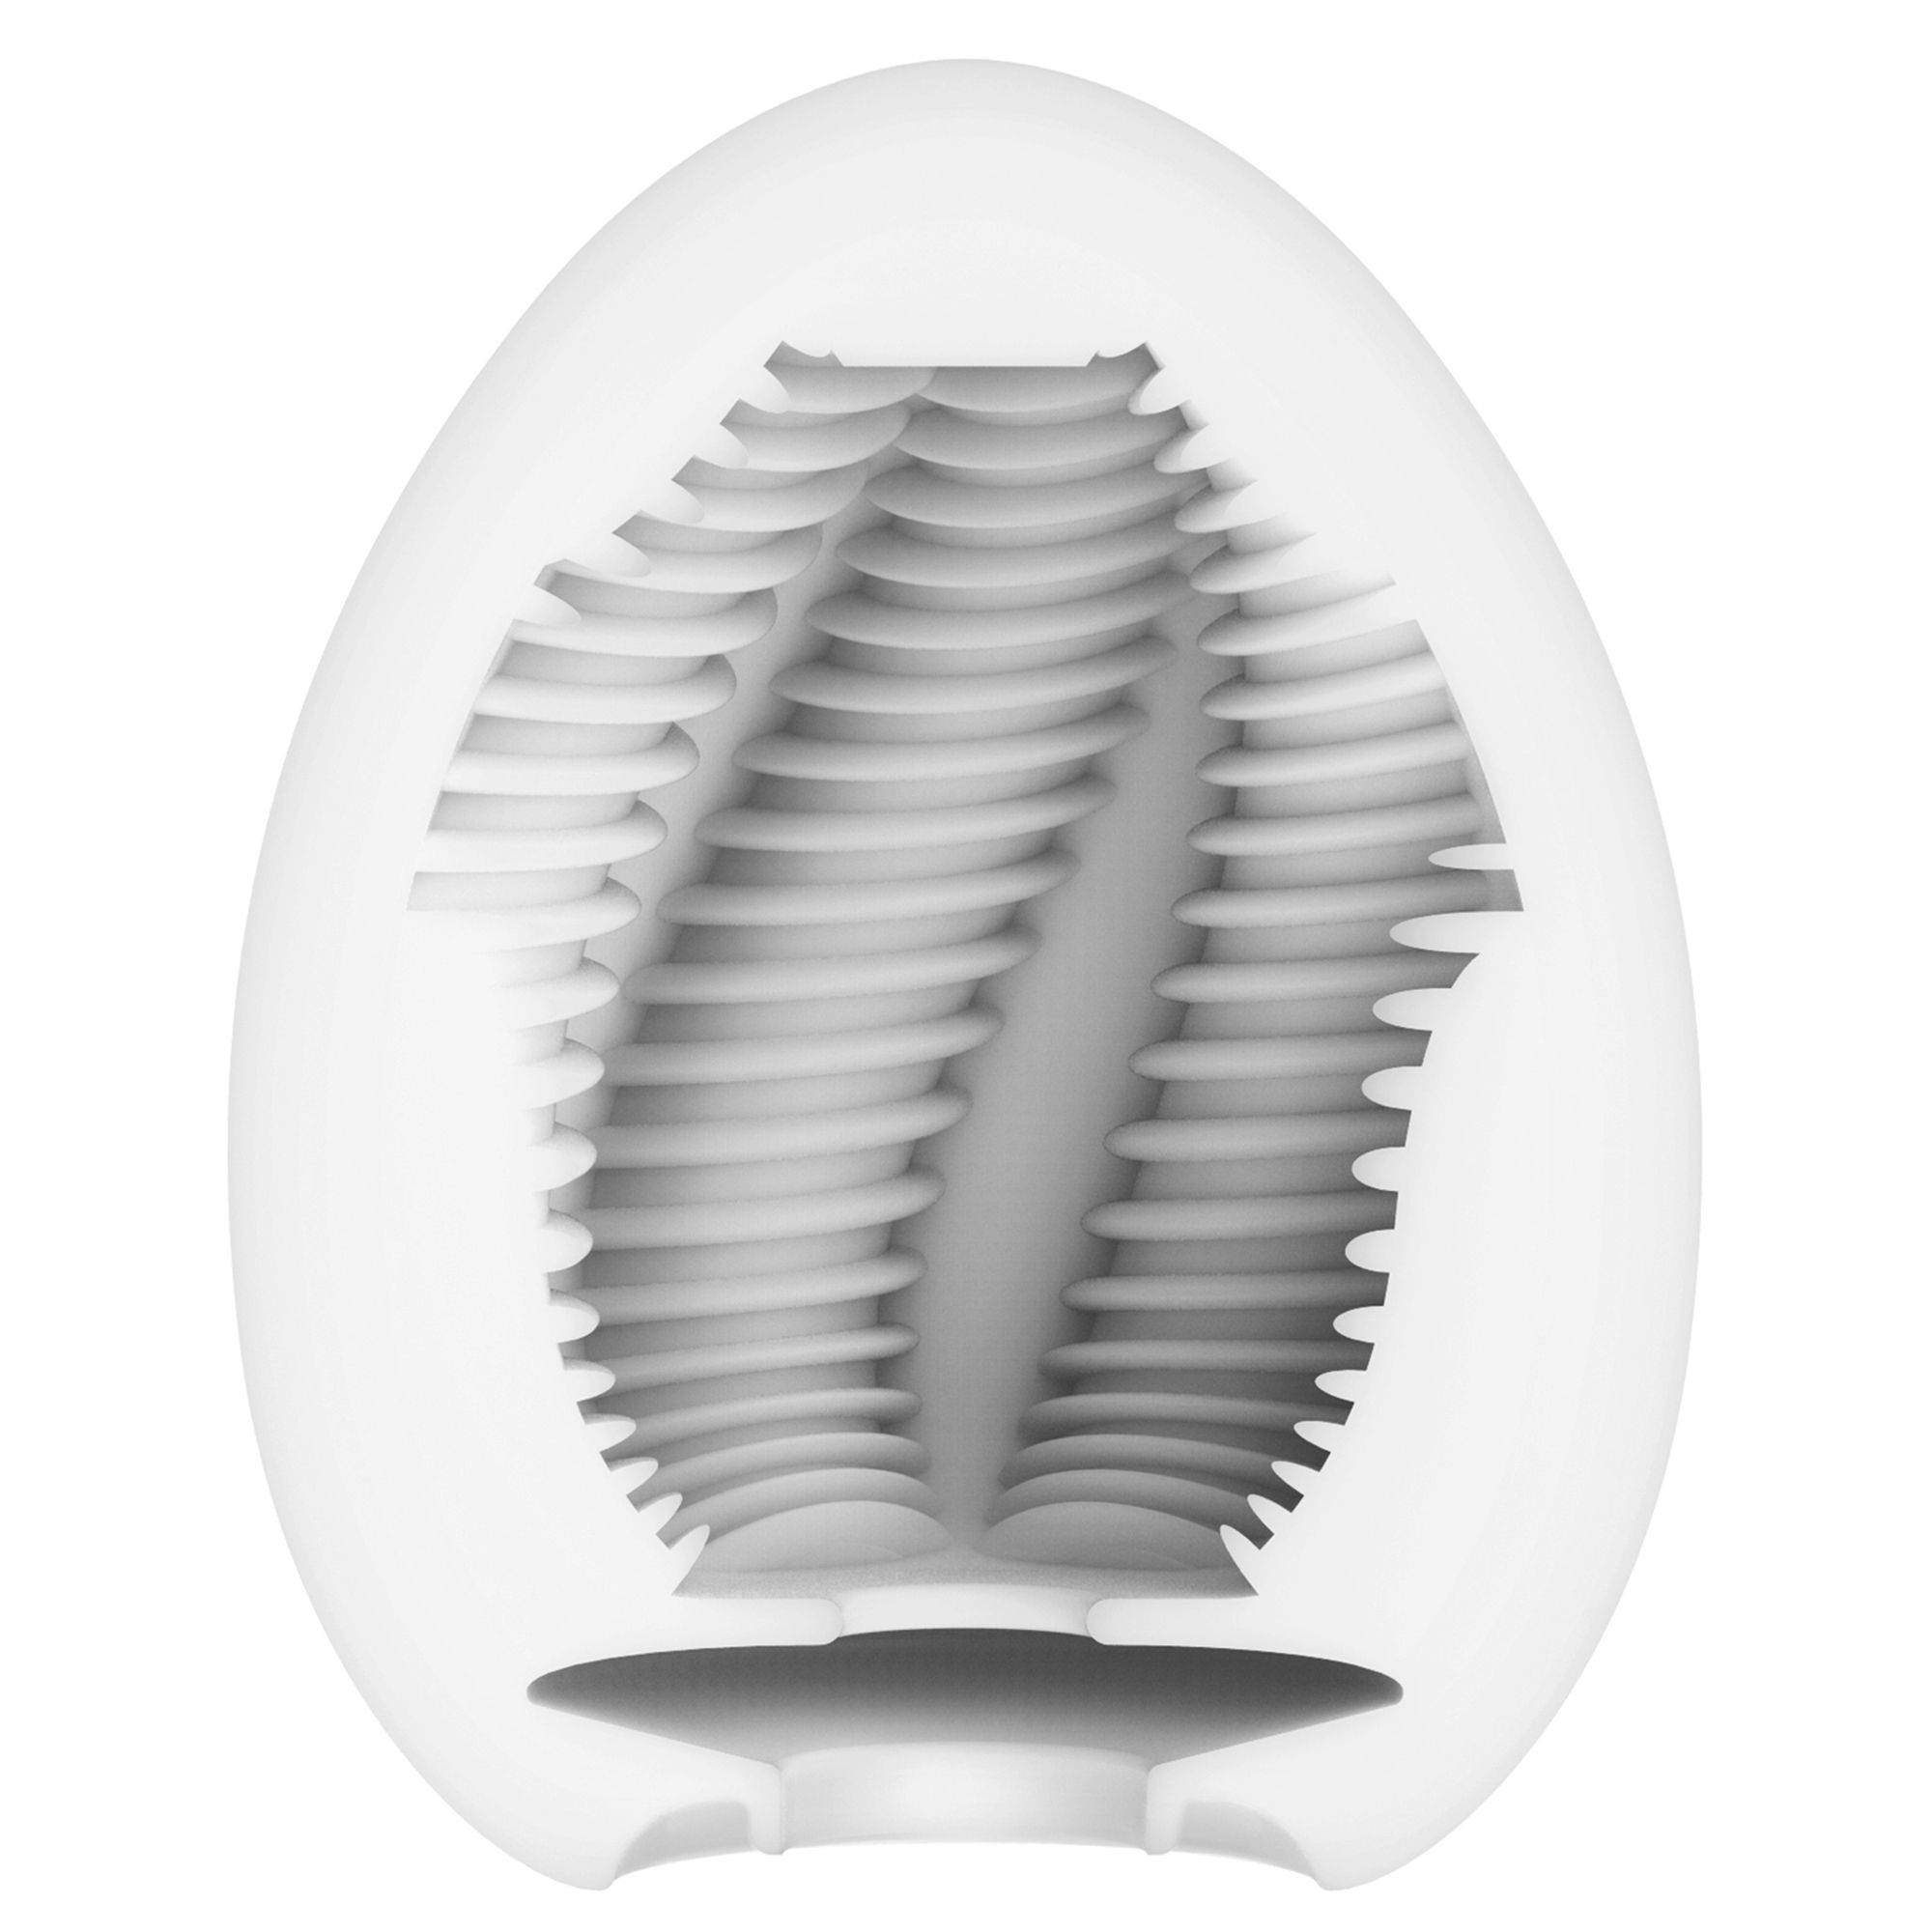 Tube TENGA Masturbator Egg